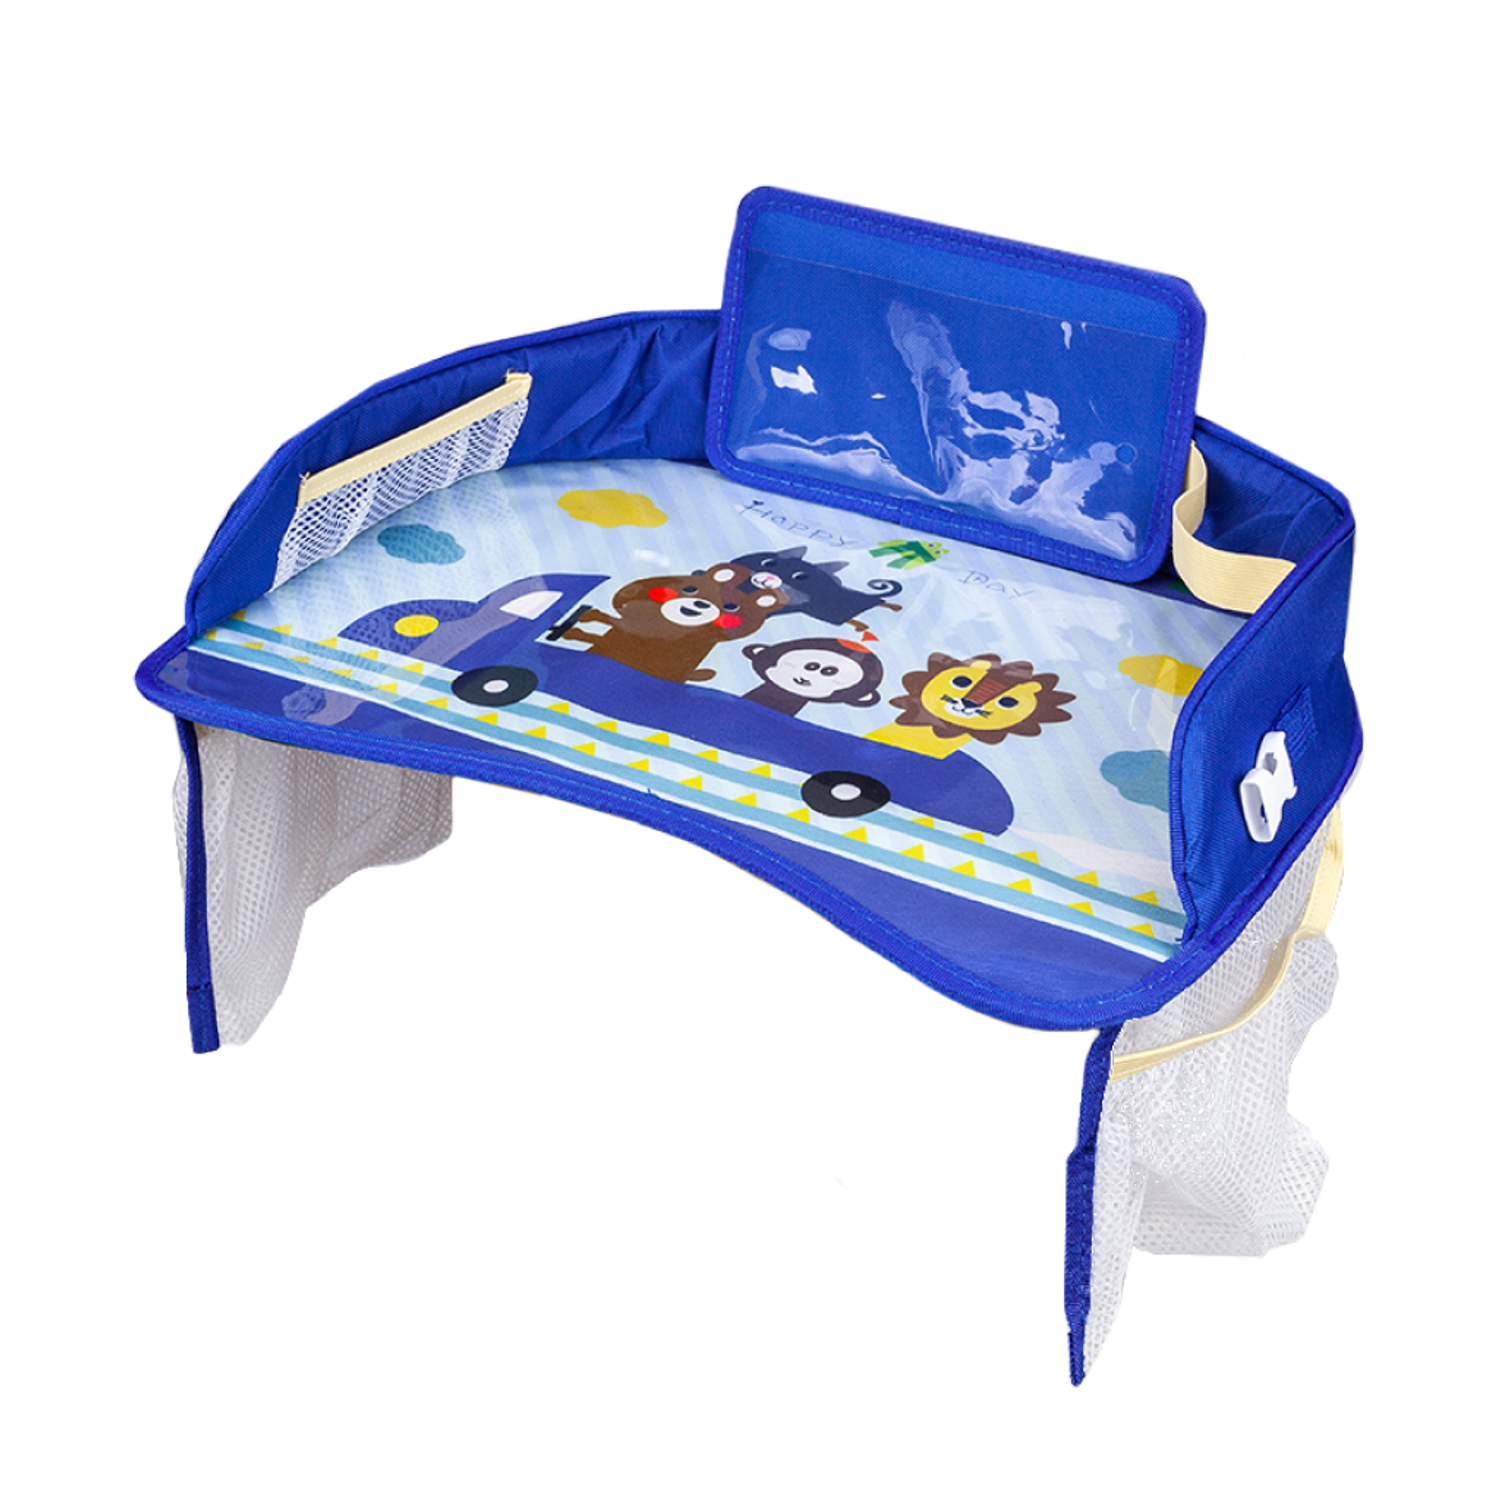 Детский столик-подставка Solmax для автокресла дорожный стол для детей в машину синий SM97111 - фото 1